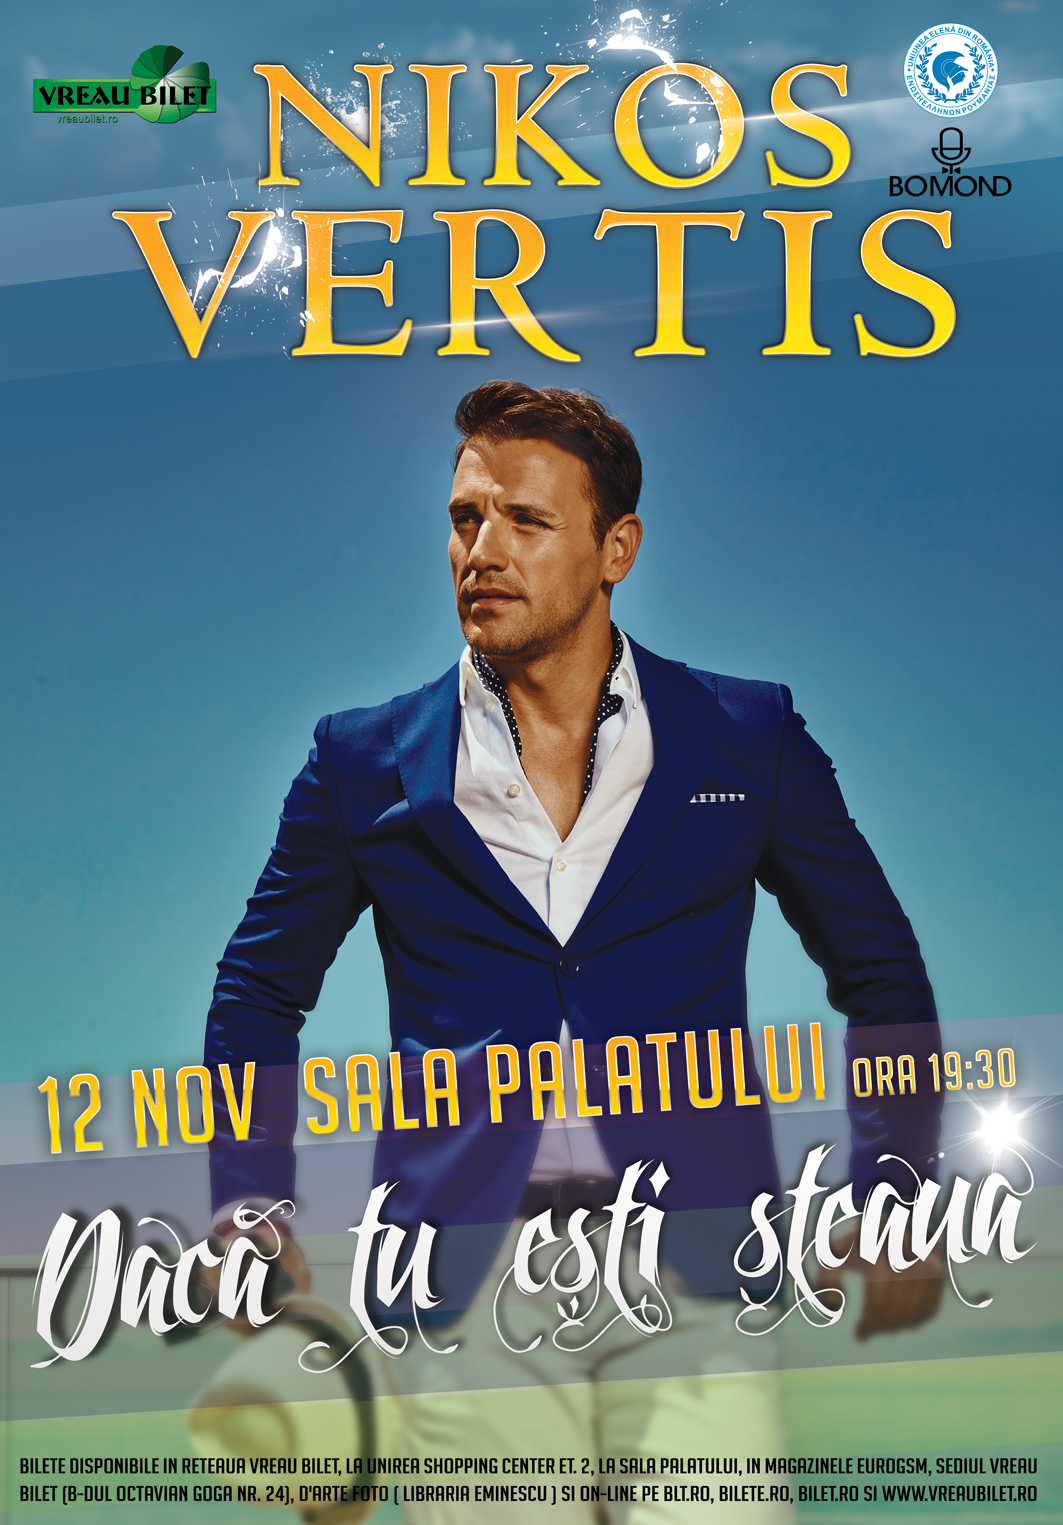 Σε συναυλία στο Palatului Hall, 12 Νοεμβρίου, μετά από πρόσκληση του Vreaum Bilet, ο πιο δημοφιλής Έλληνας τραγουδιστής, ο Νίκος Βέρτης ονομάζει δρόμο στο Τορόντο – Διασκέδαση > Εκδηλώσεις